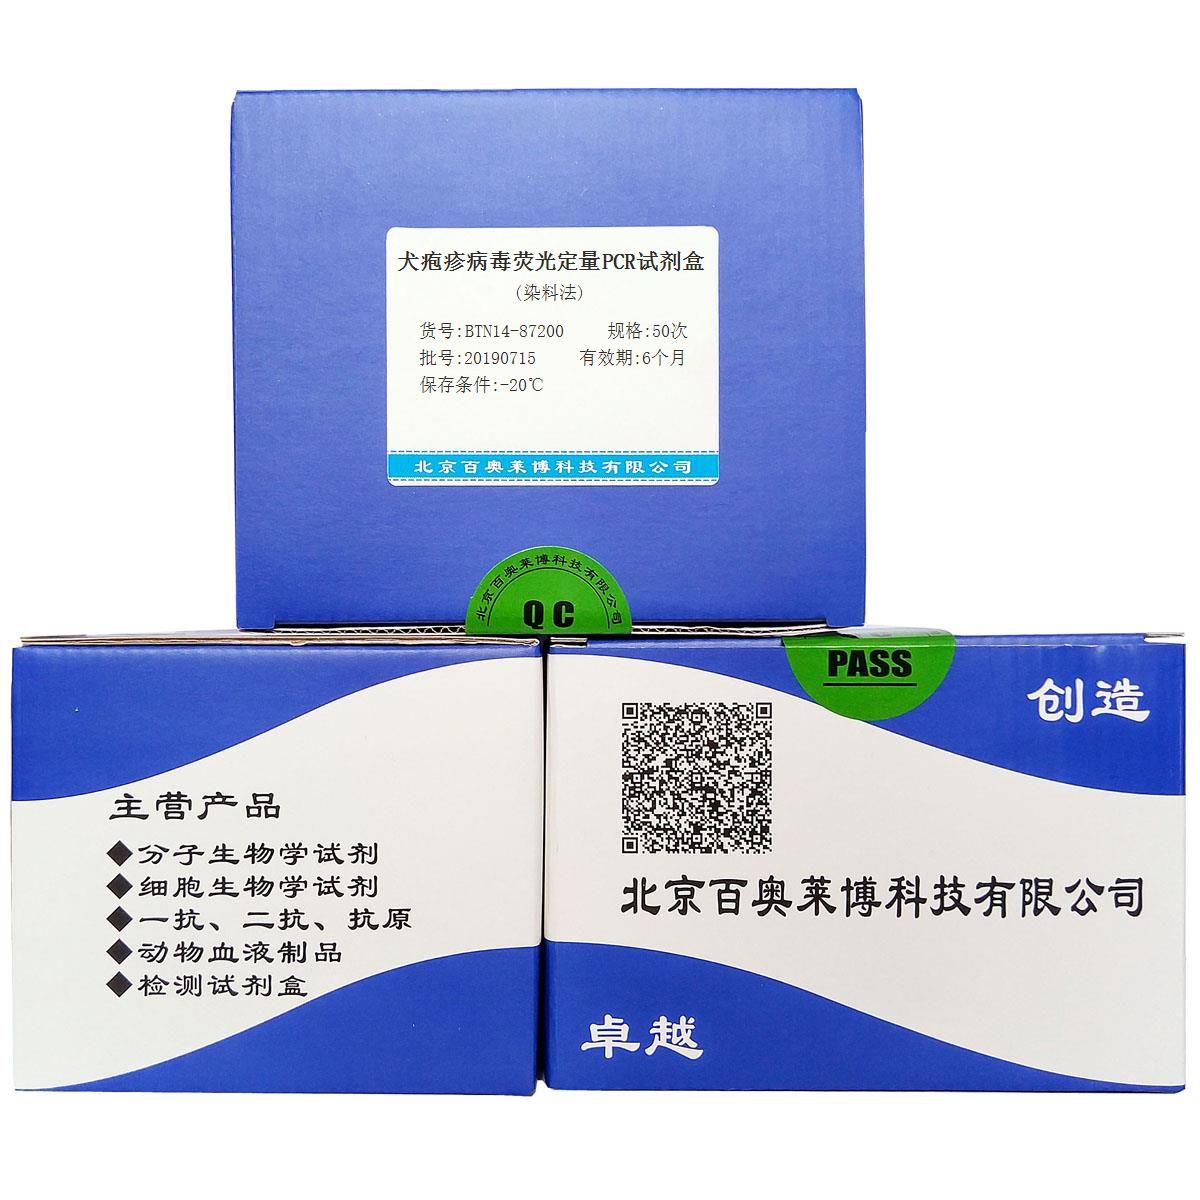 犬疱疹病毒荧光定量PCR试剂盒(染料法)